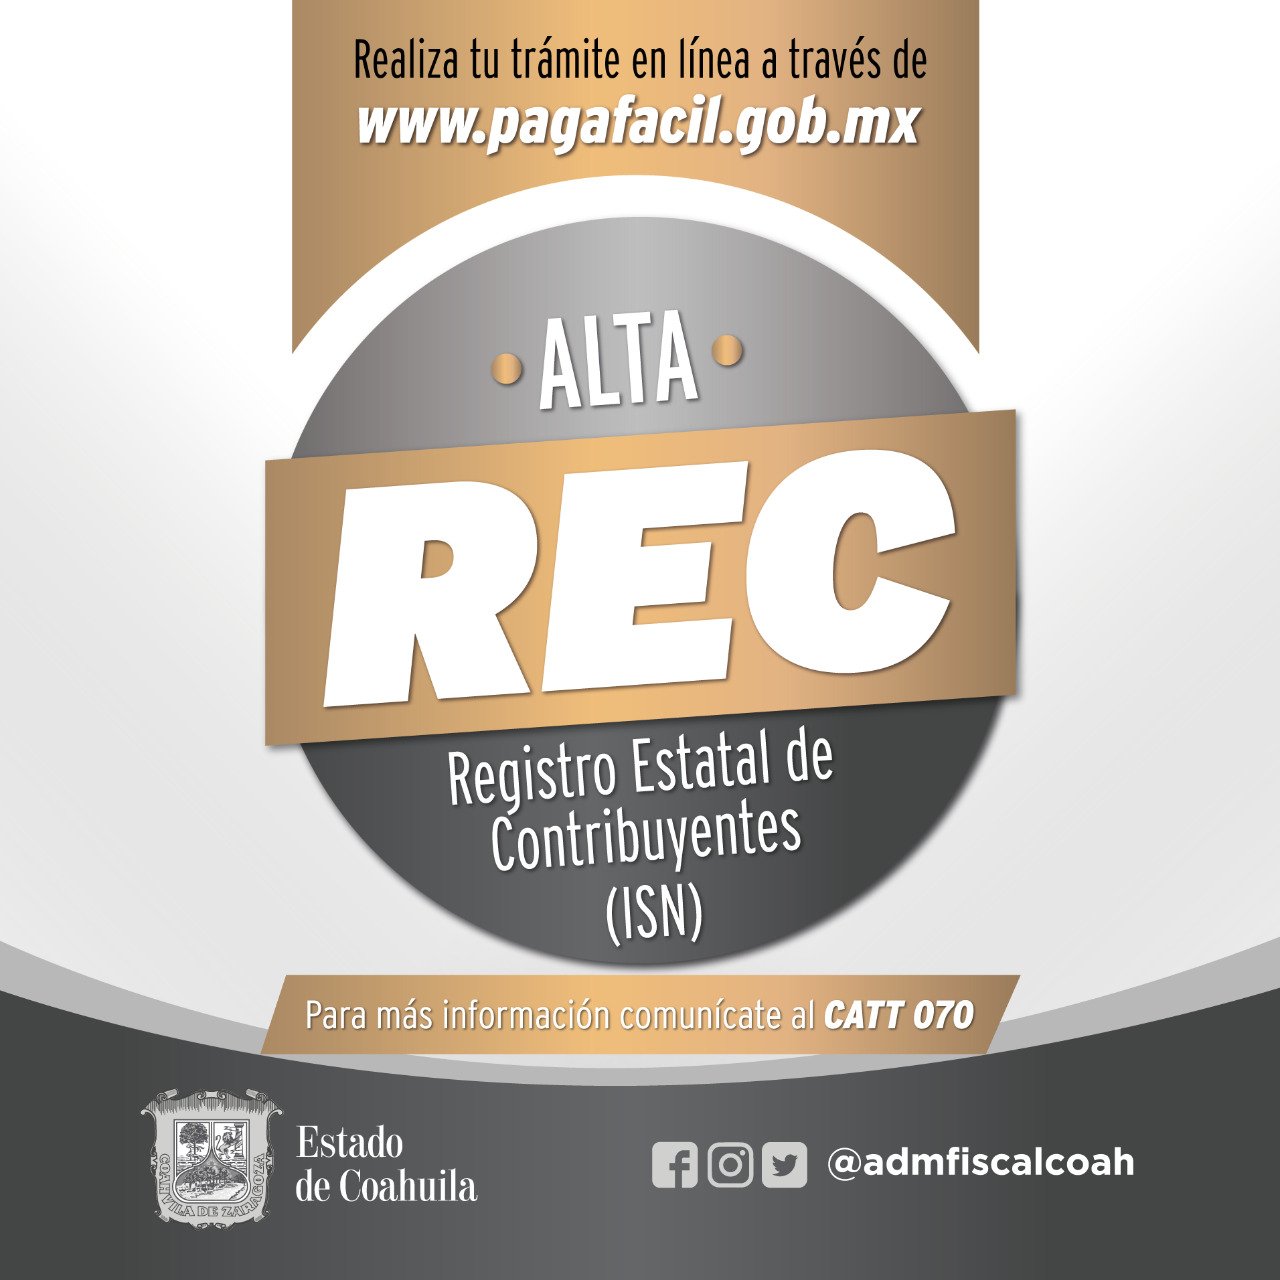 001-REALIZA-TU-ALTA-EN-EL-REGISTRO-DE-CONTRIBUYENTES-DE-COAHUILA-DESDE-PAGAFÁCIL-Y-AHORRA-TIEMPO1130.jpg